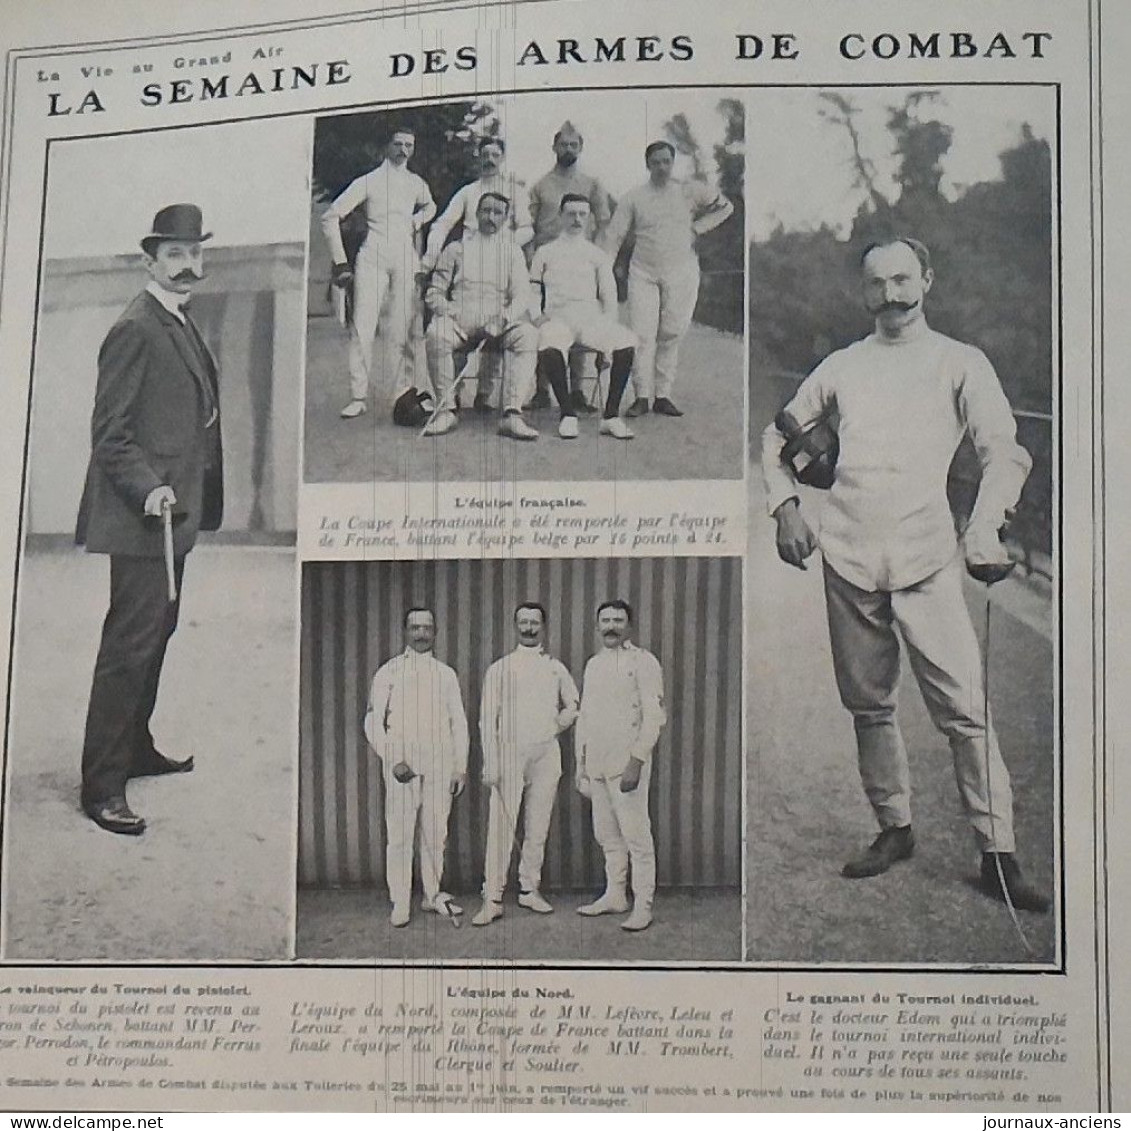 1907 LA SEMAINE DES ARMES DE COMBAT - DISPUTÉE AUX TUILLERIES - BARON DE SCHONEN - Dorteur EDOM - EQUIPE DU NORD - Kampfsport